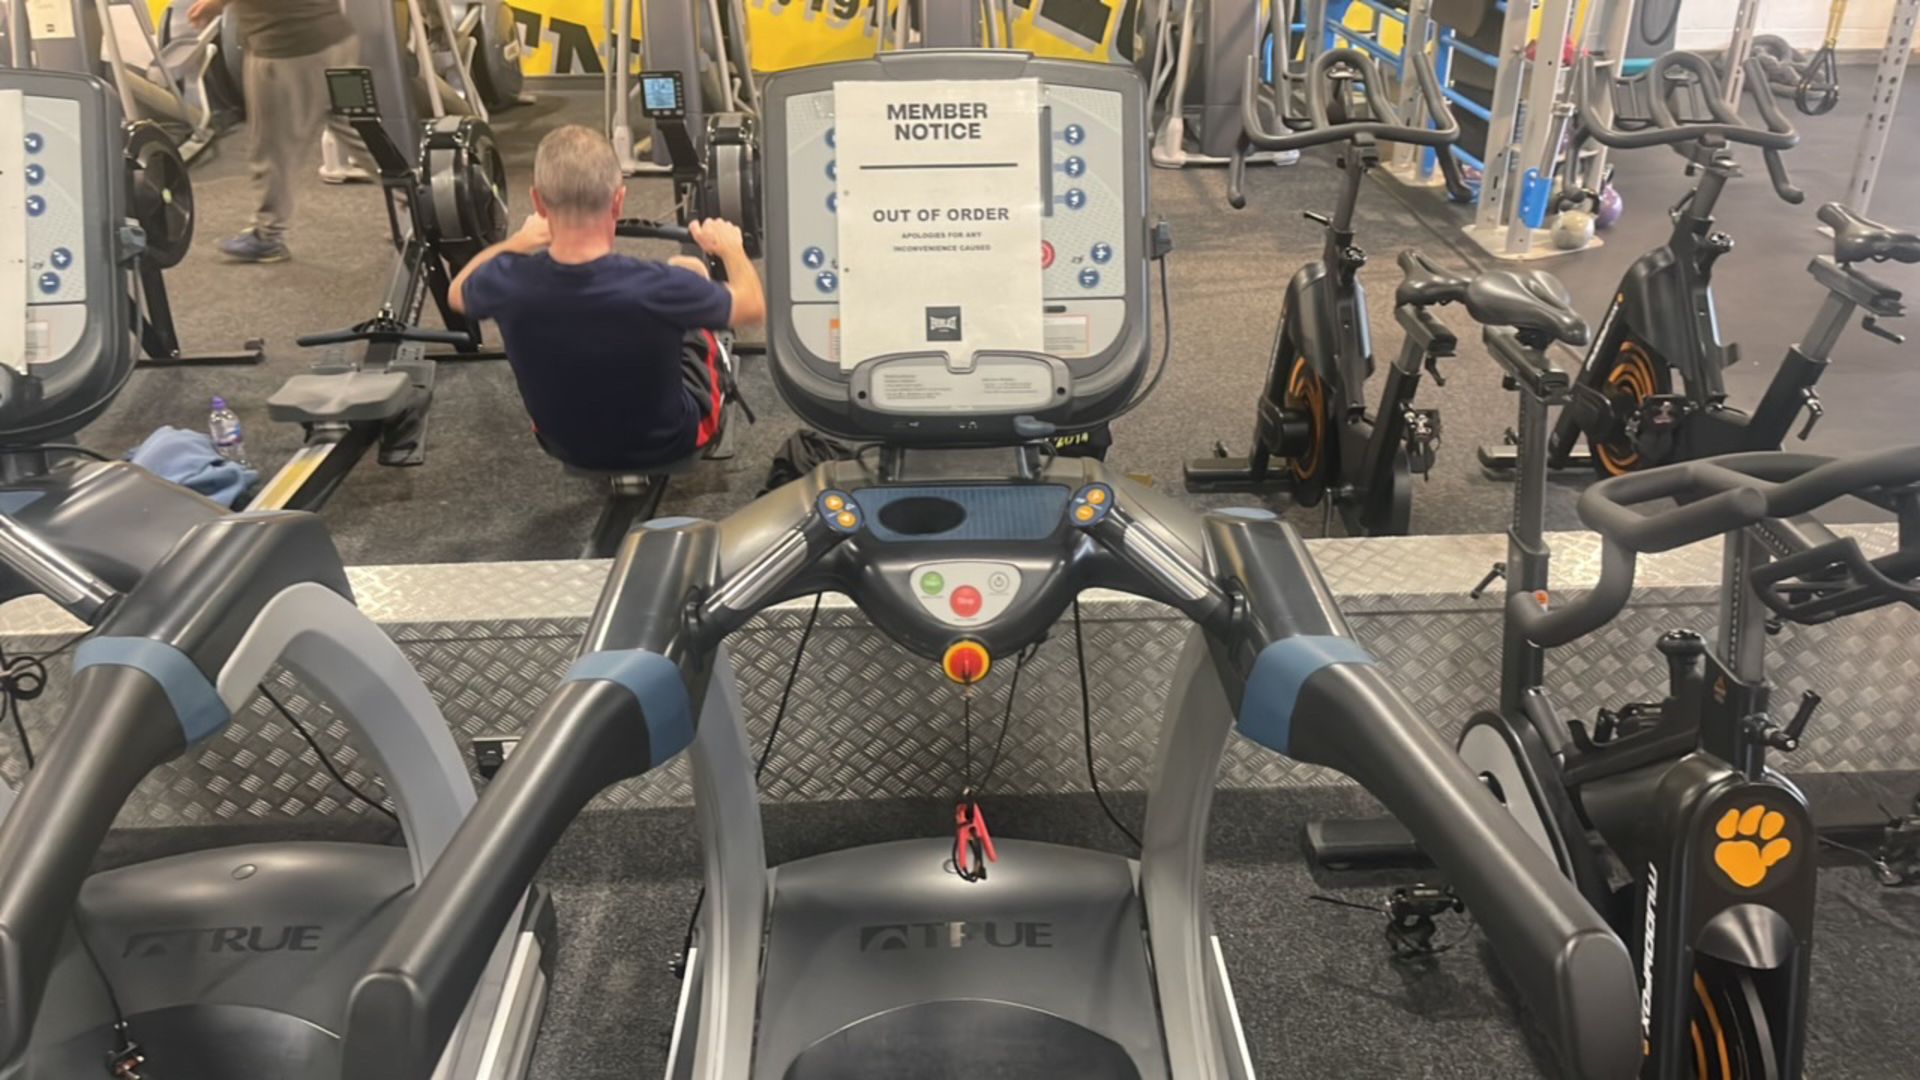 True Fitness Treadmill - Image 2 of 5